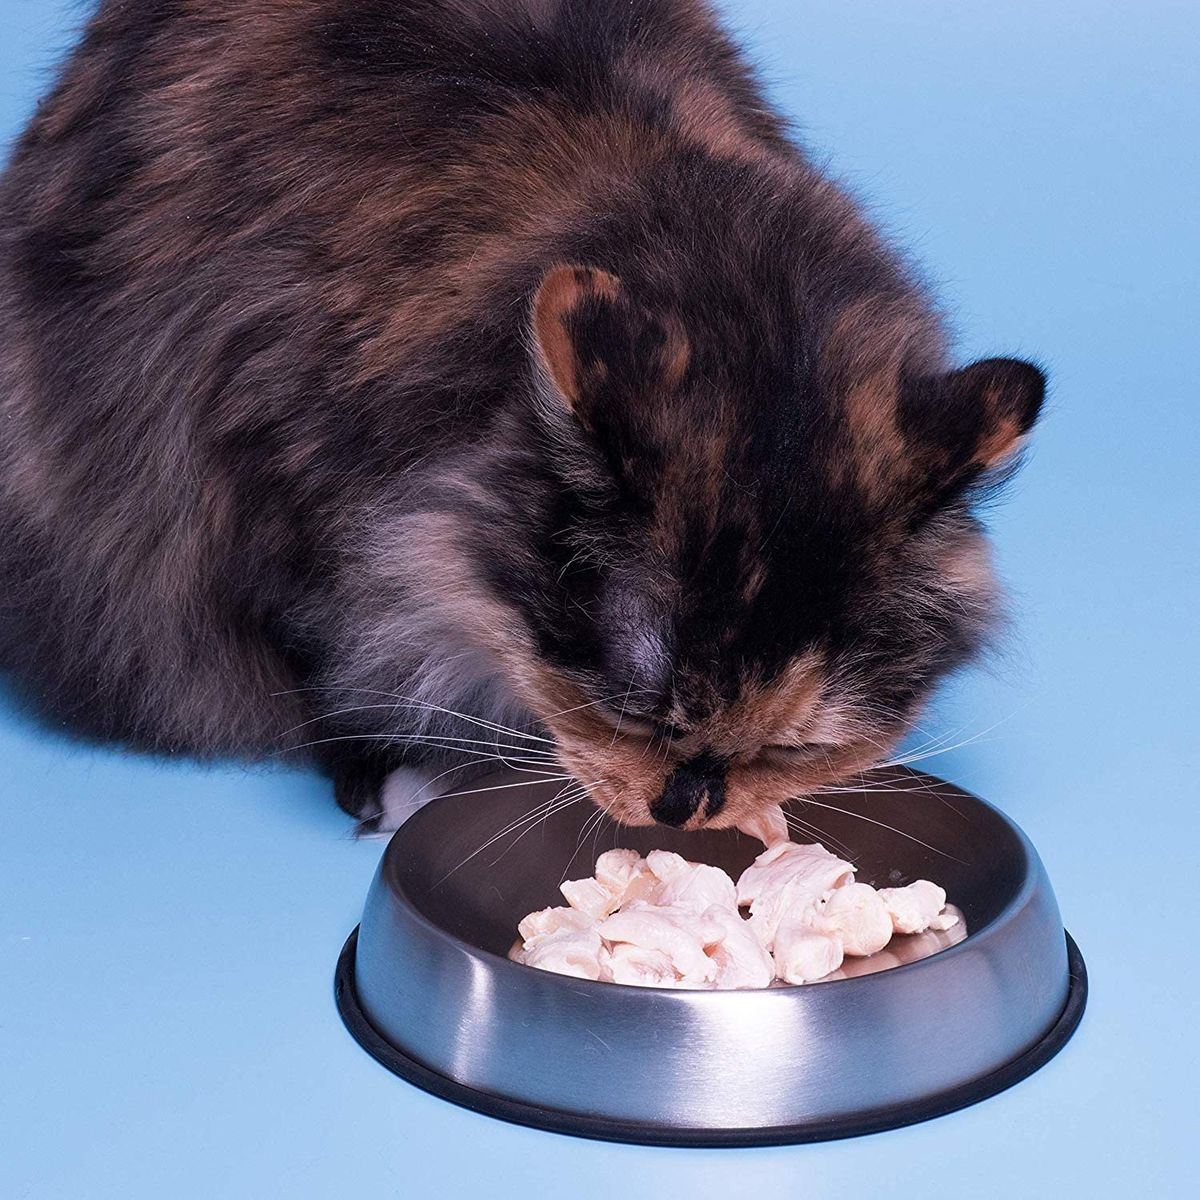 5-те най-добри купички за котешка храна според ветеринар